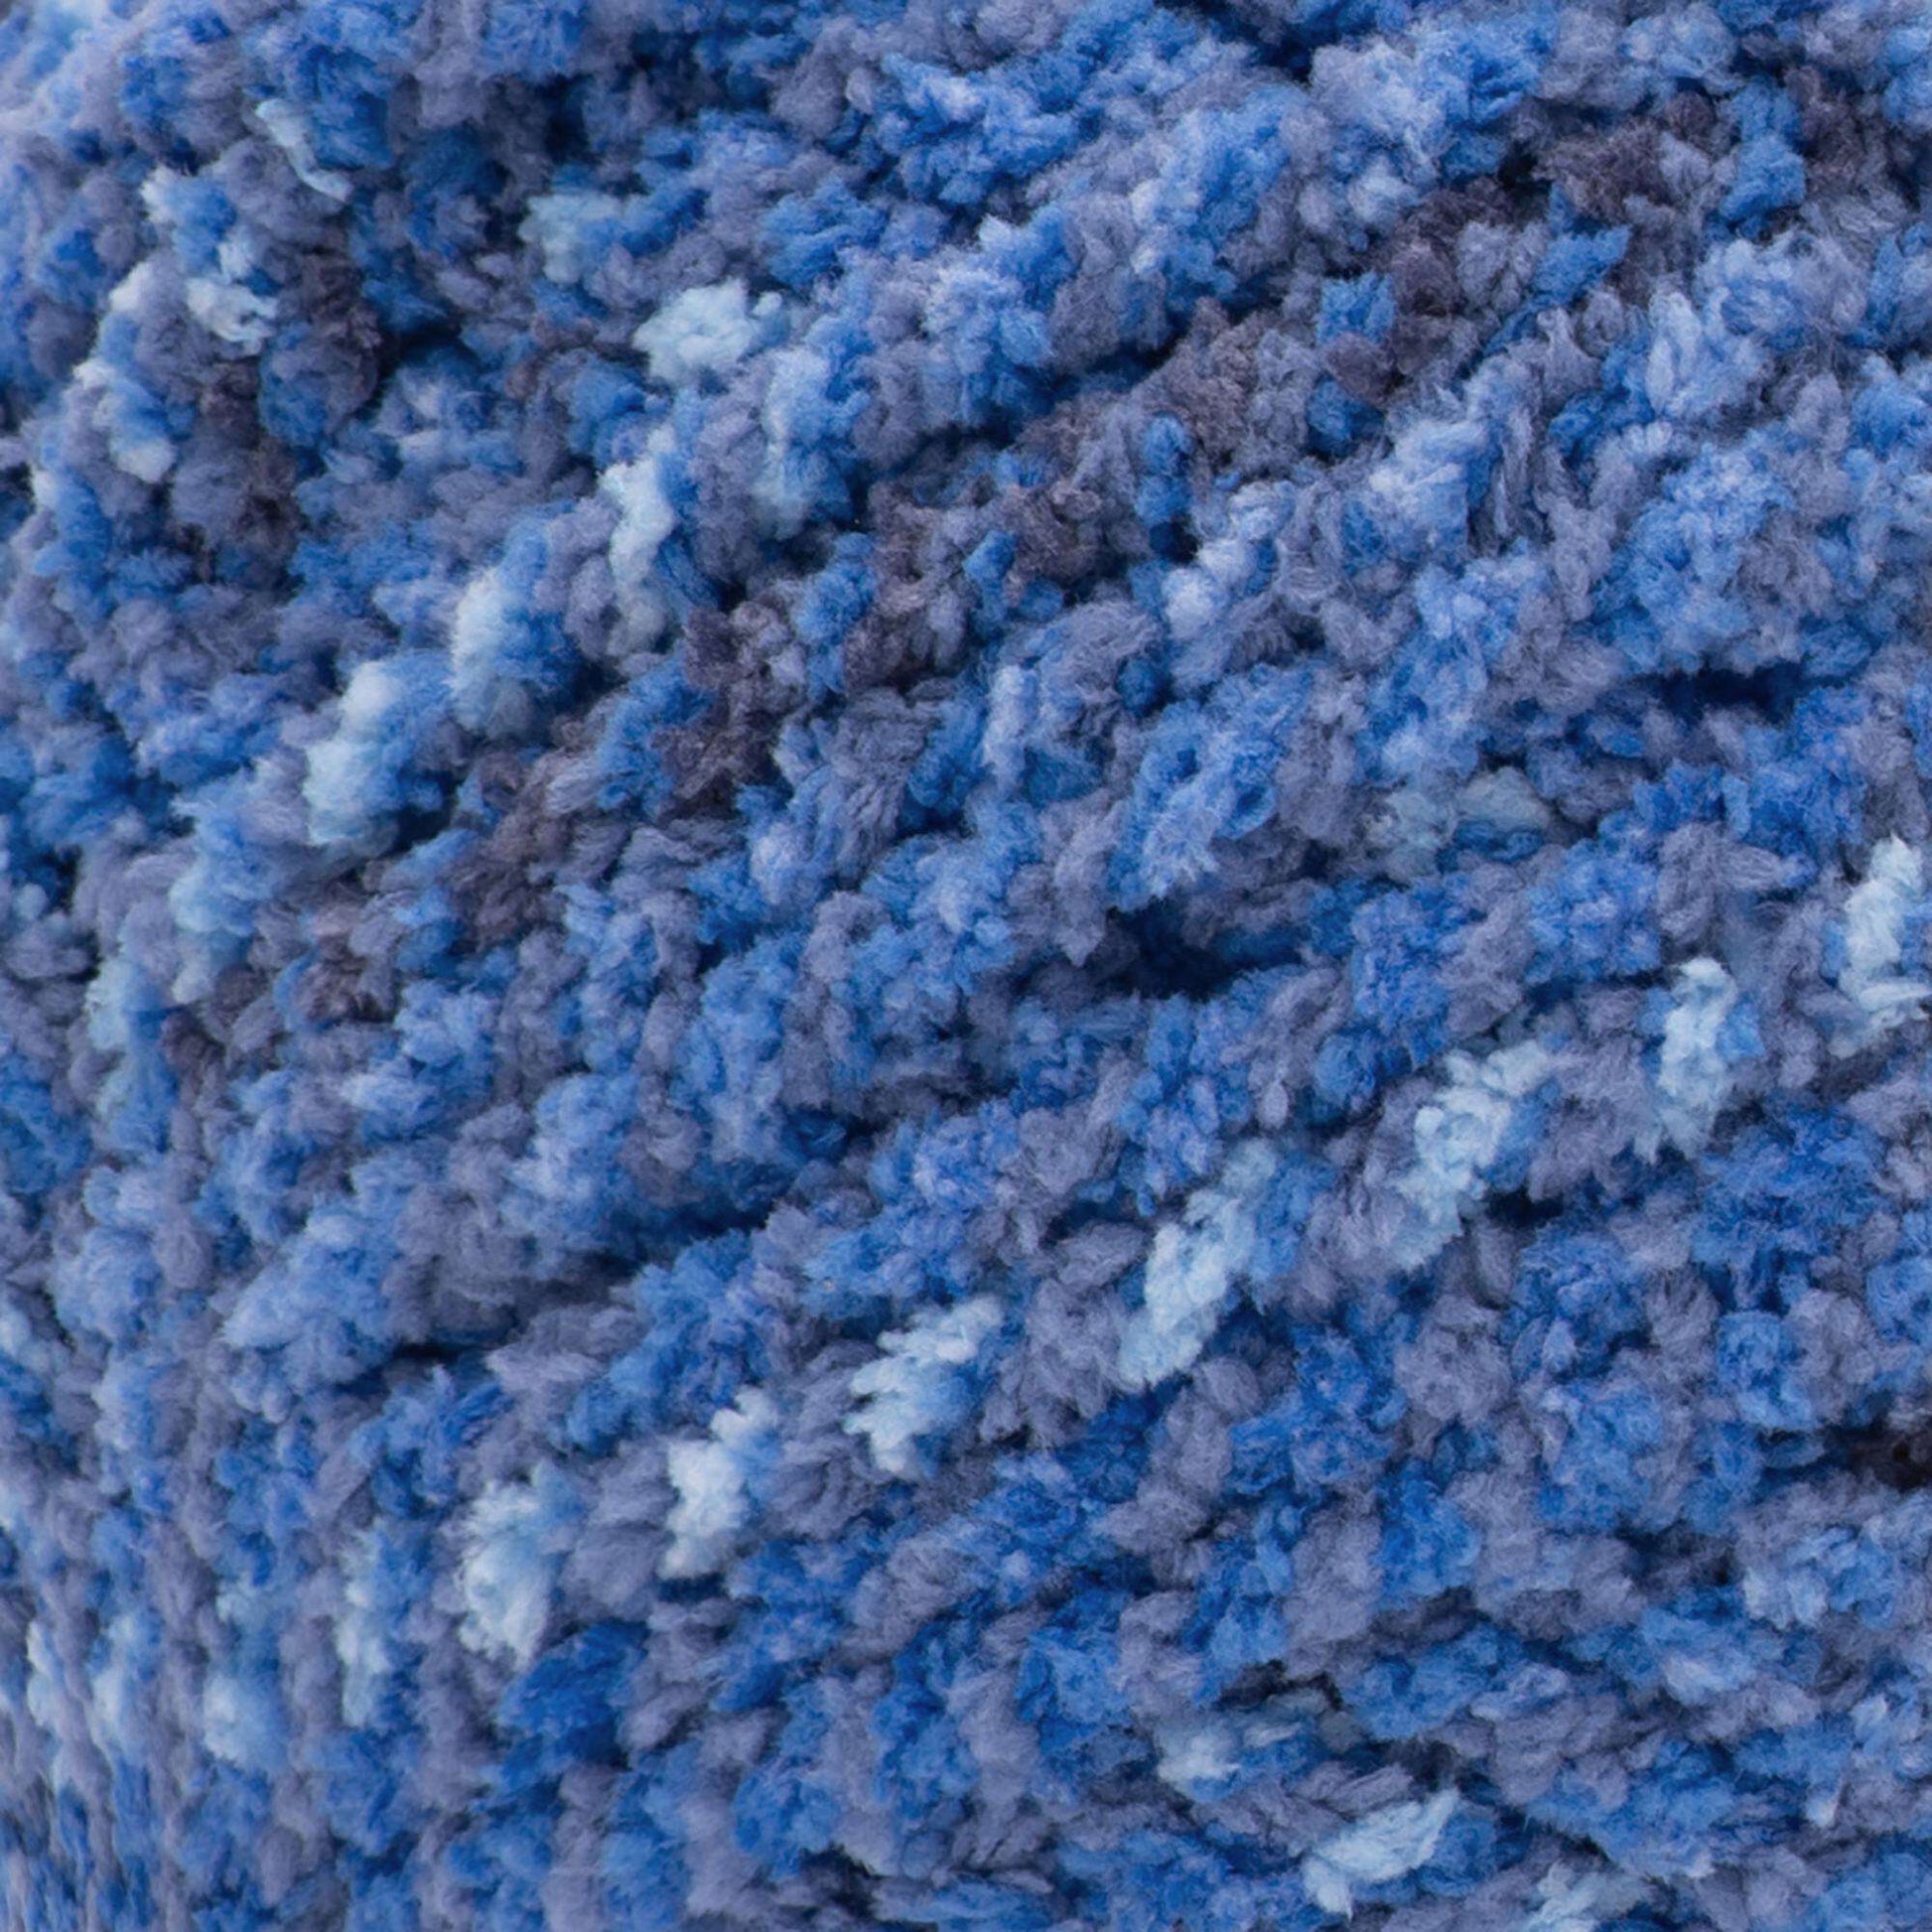 Bernat Baby Blanket Yarn (300g/10.5oz) - Clearance Shades - Blue Twist